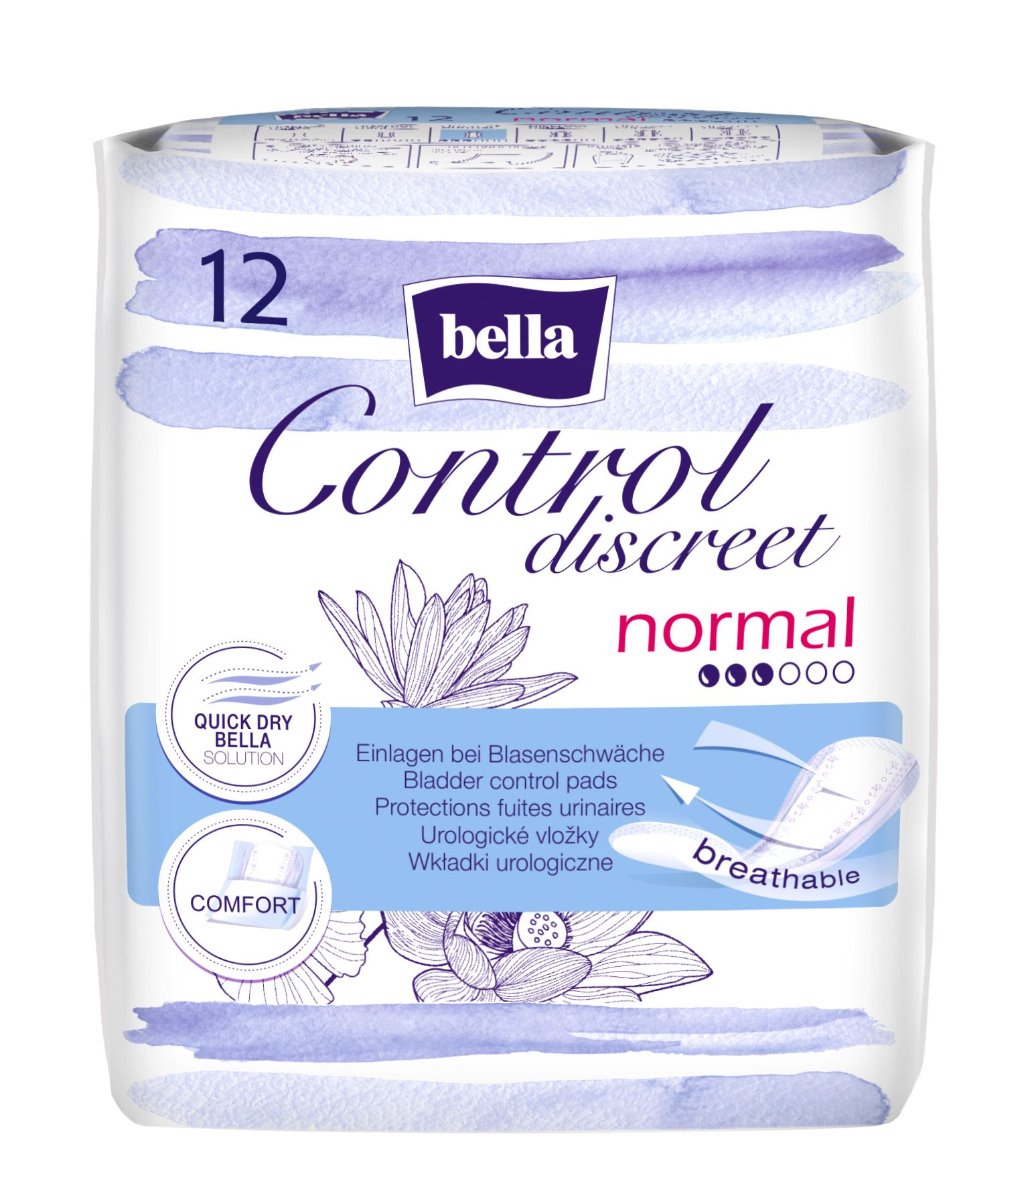 Bella Control Discreet normal urologické vložky 12 ks Bella